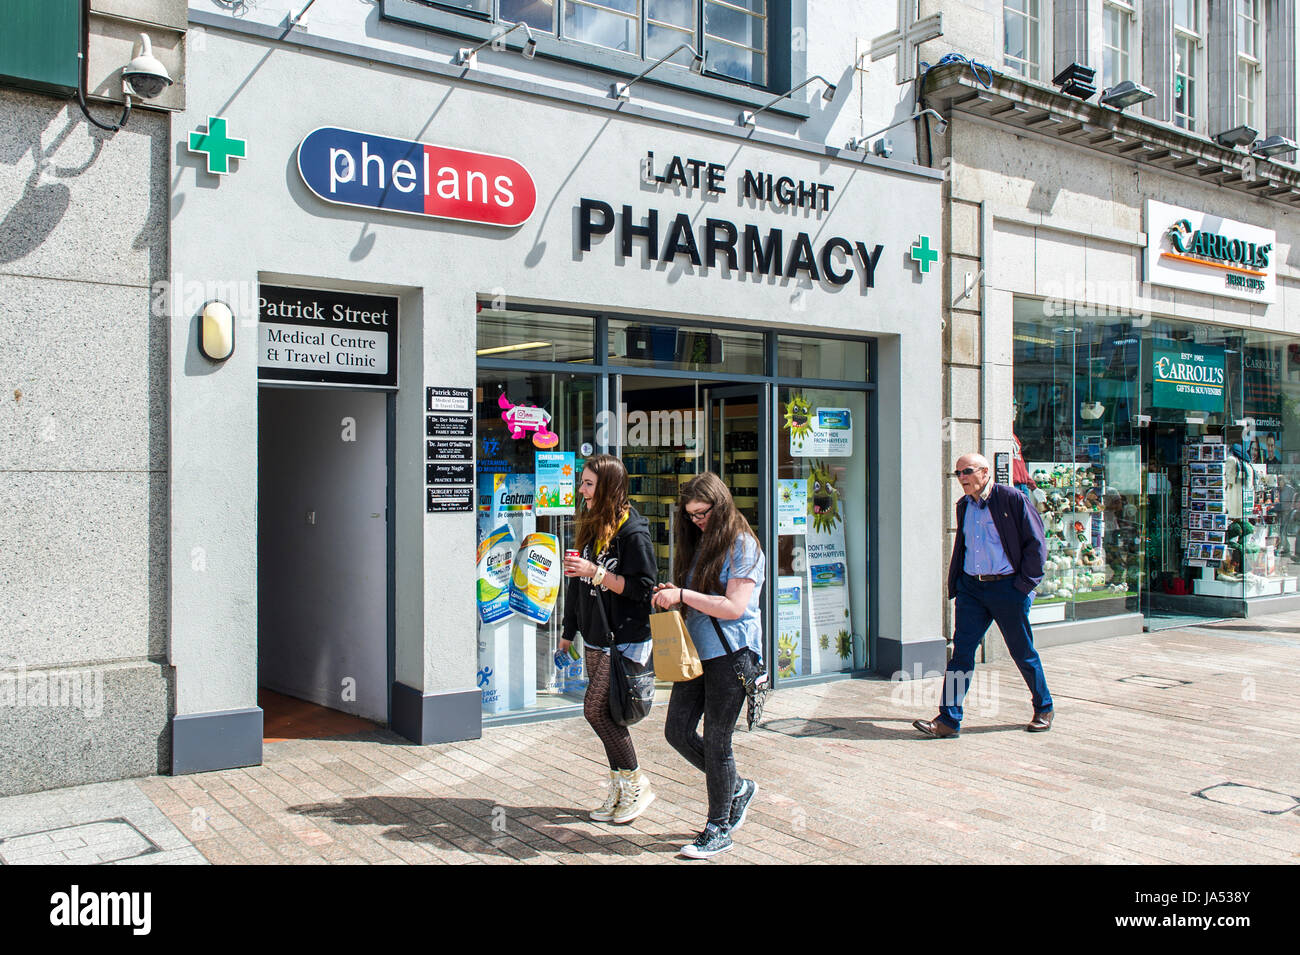 Les personnes qui s'y passé une fin de nuit pharmacie pharmacie sur Patrick Street, Cork, Irlande. Banque D'Images